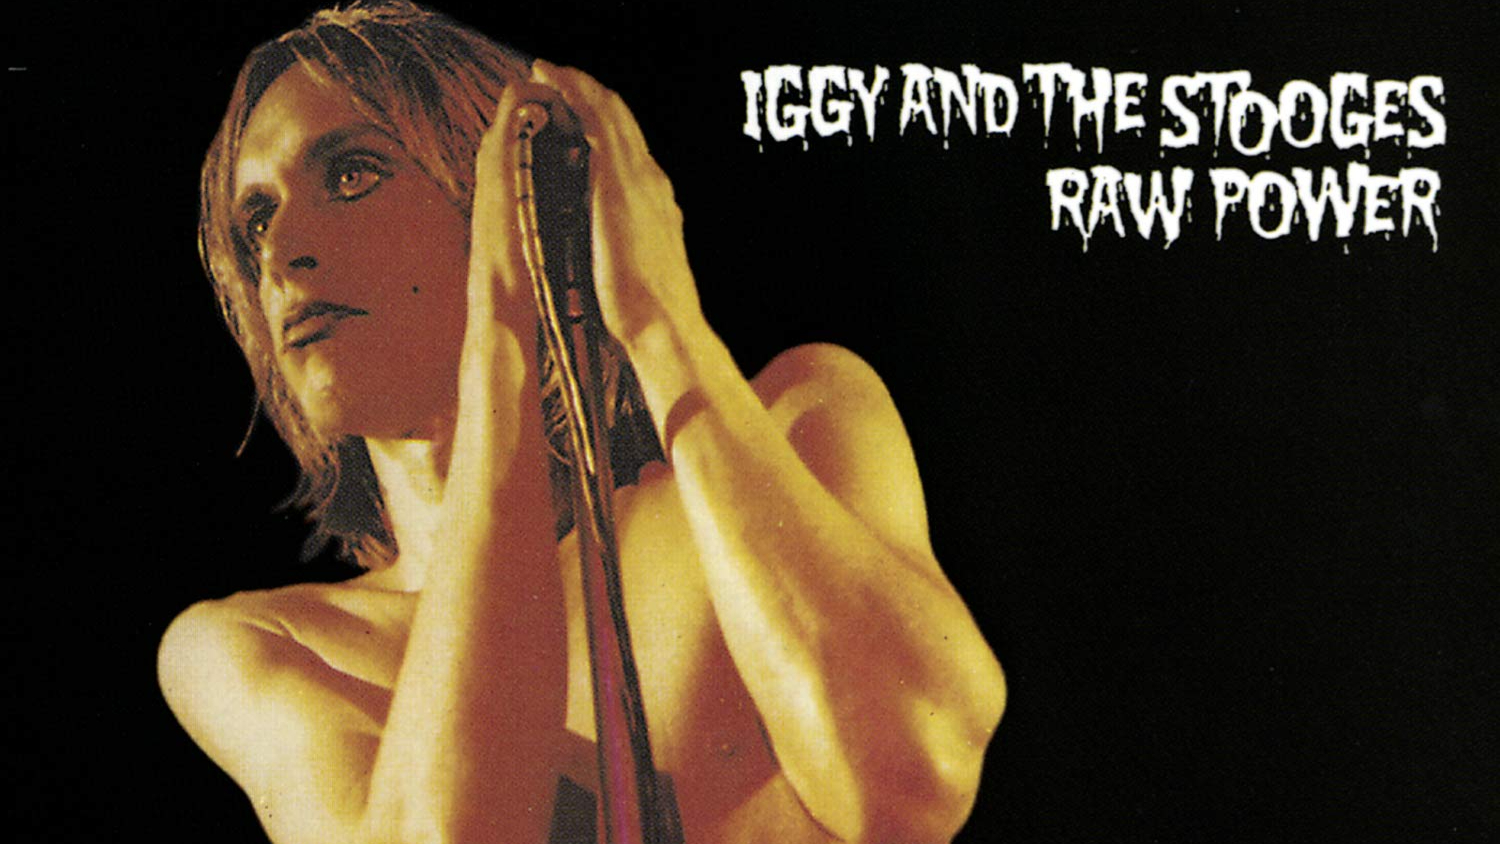 Cover-Artwork von "Raw Power" von Iggy Pop And The Stooges